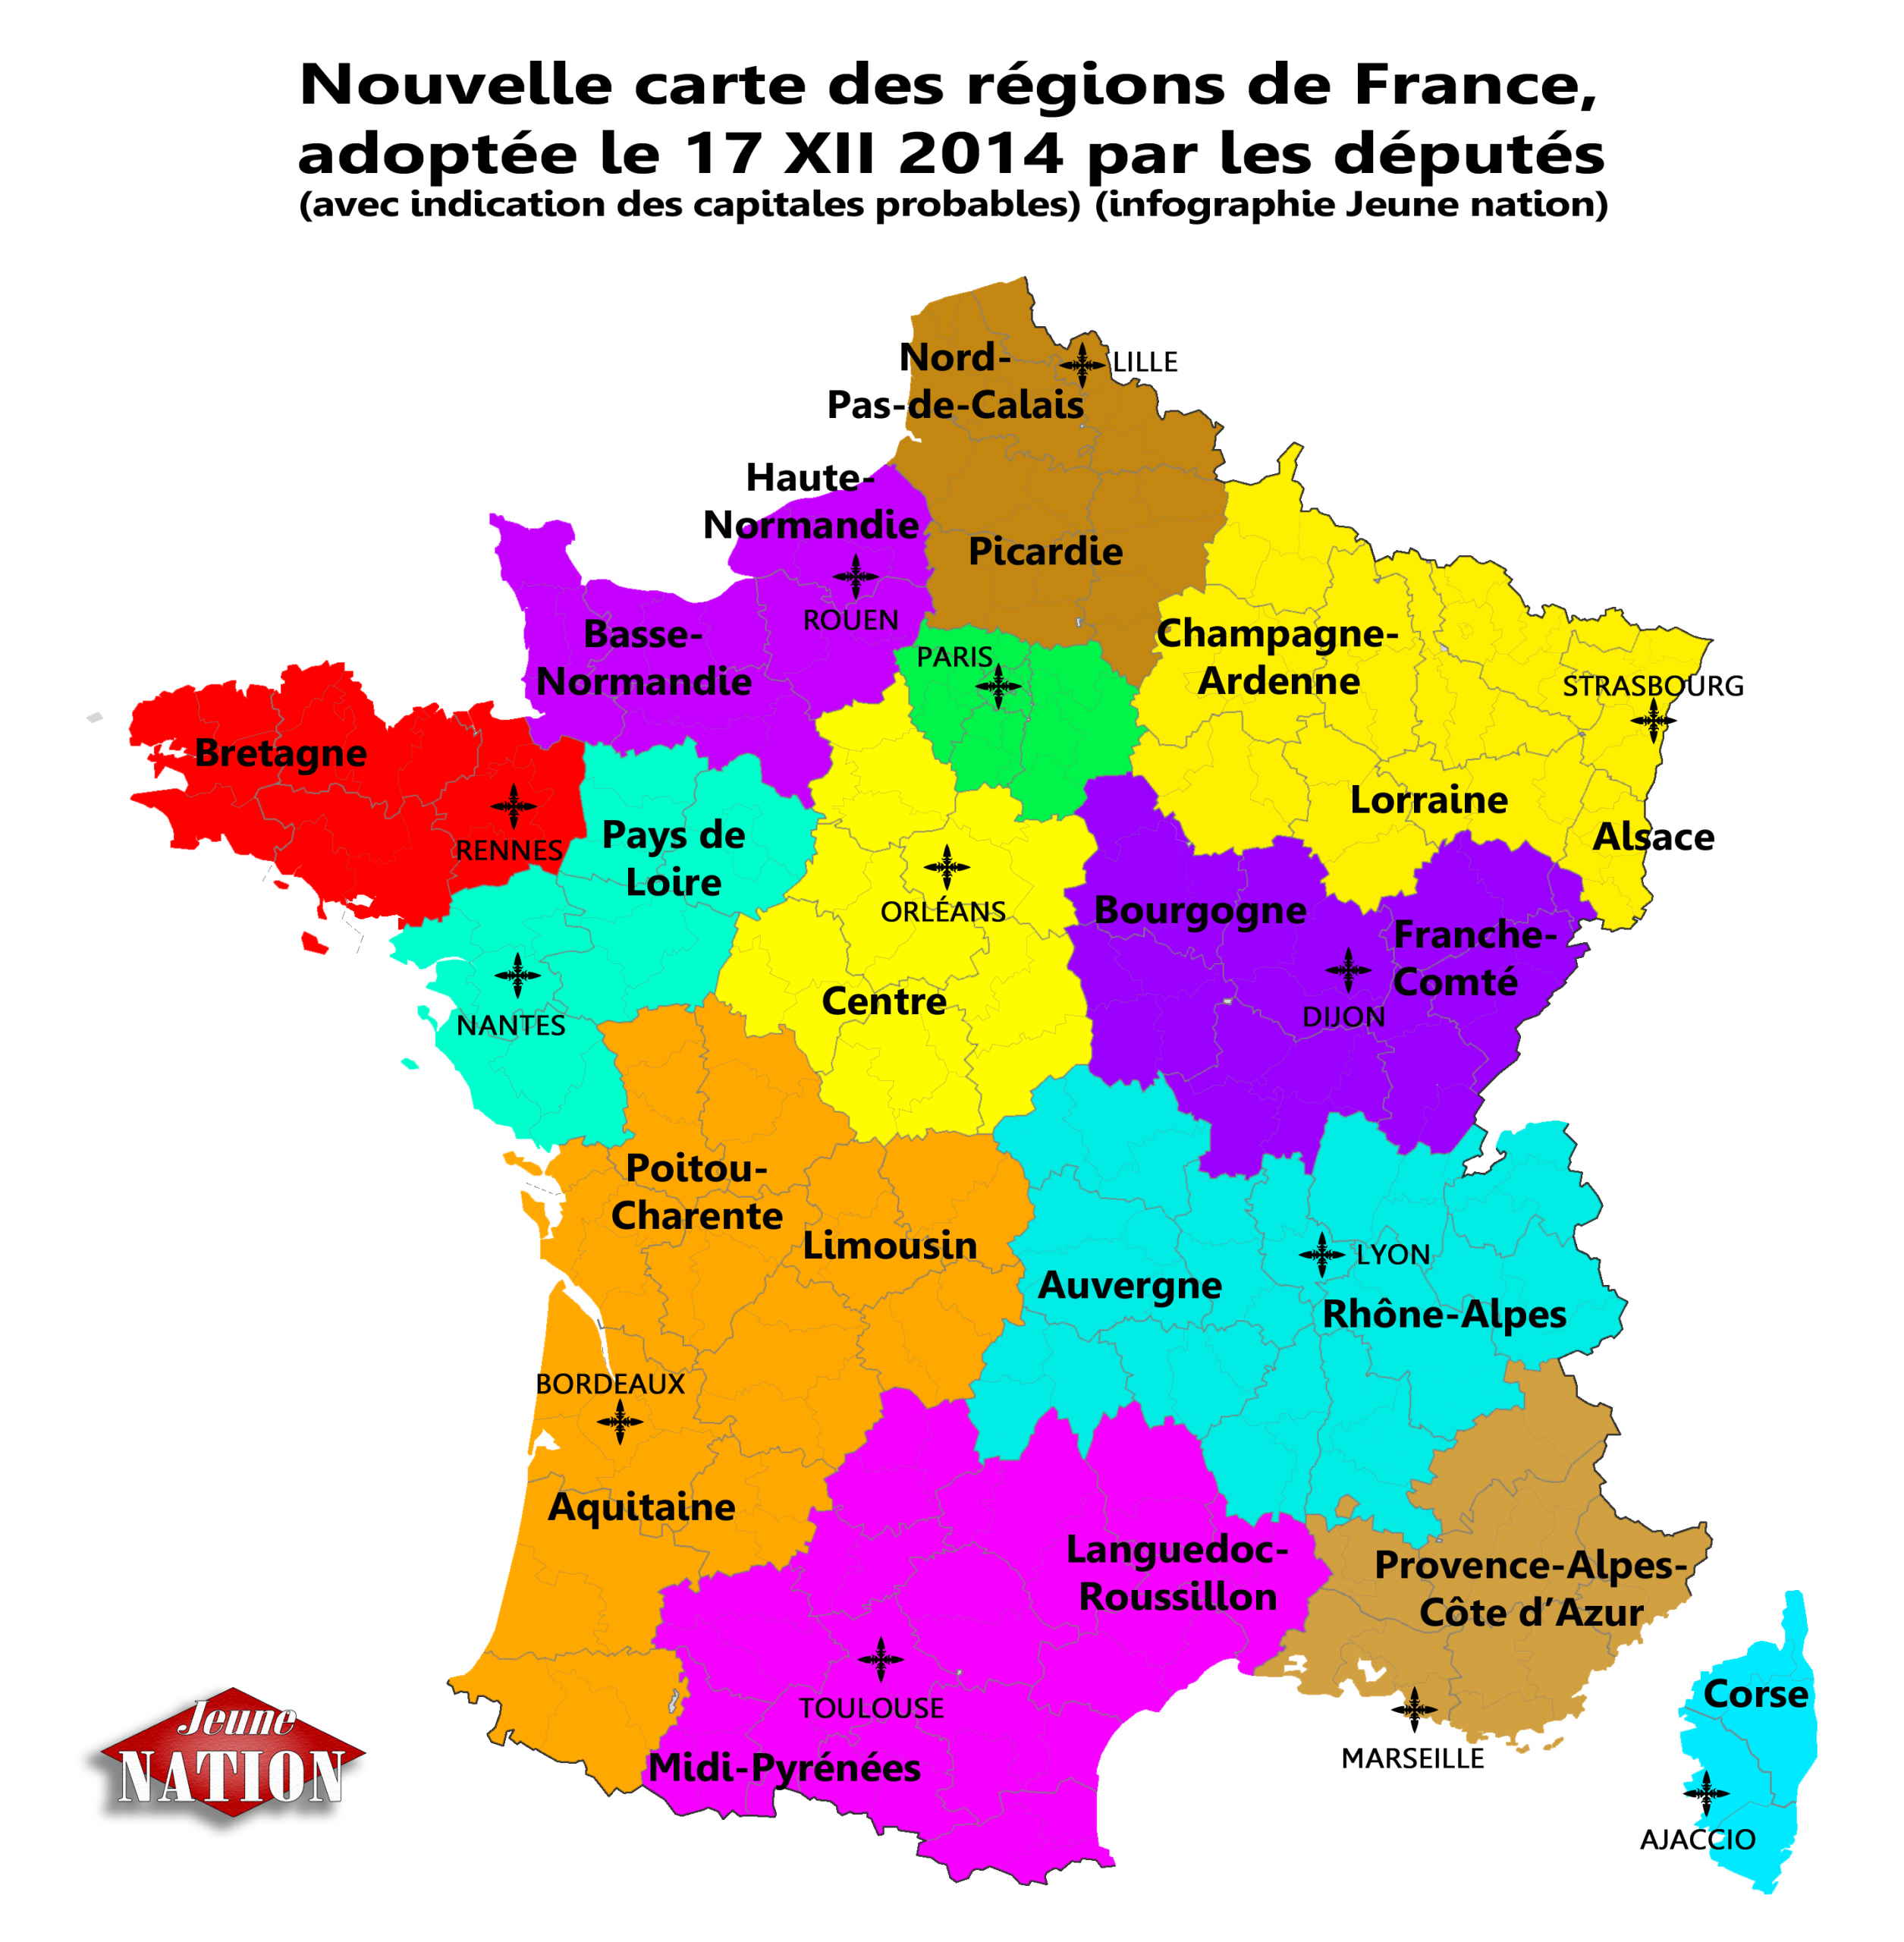 Réforme Territoriale : Les Députés Valident Définitivement concernant Carte Des 13 Nouvelles Régions De France